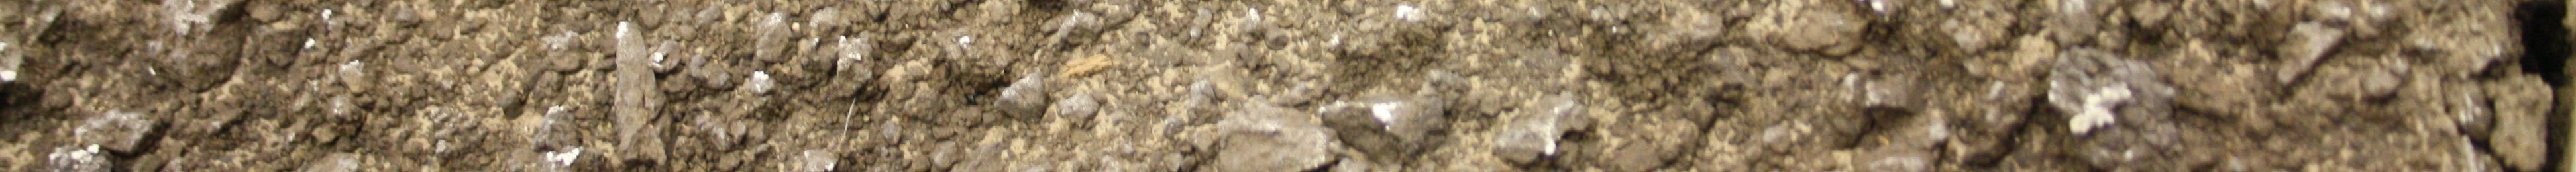 Az oldott, vagy kvázi oldott formájú szerves szén nem tehet ki nagyobb mennyiséget, hiszen a talajban található szénformák meghatározó része nem vízoldható.